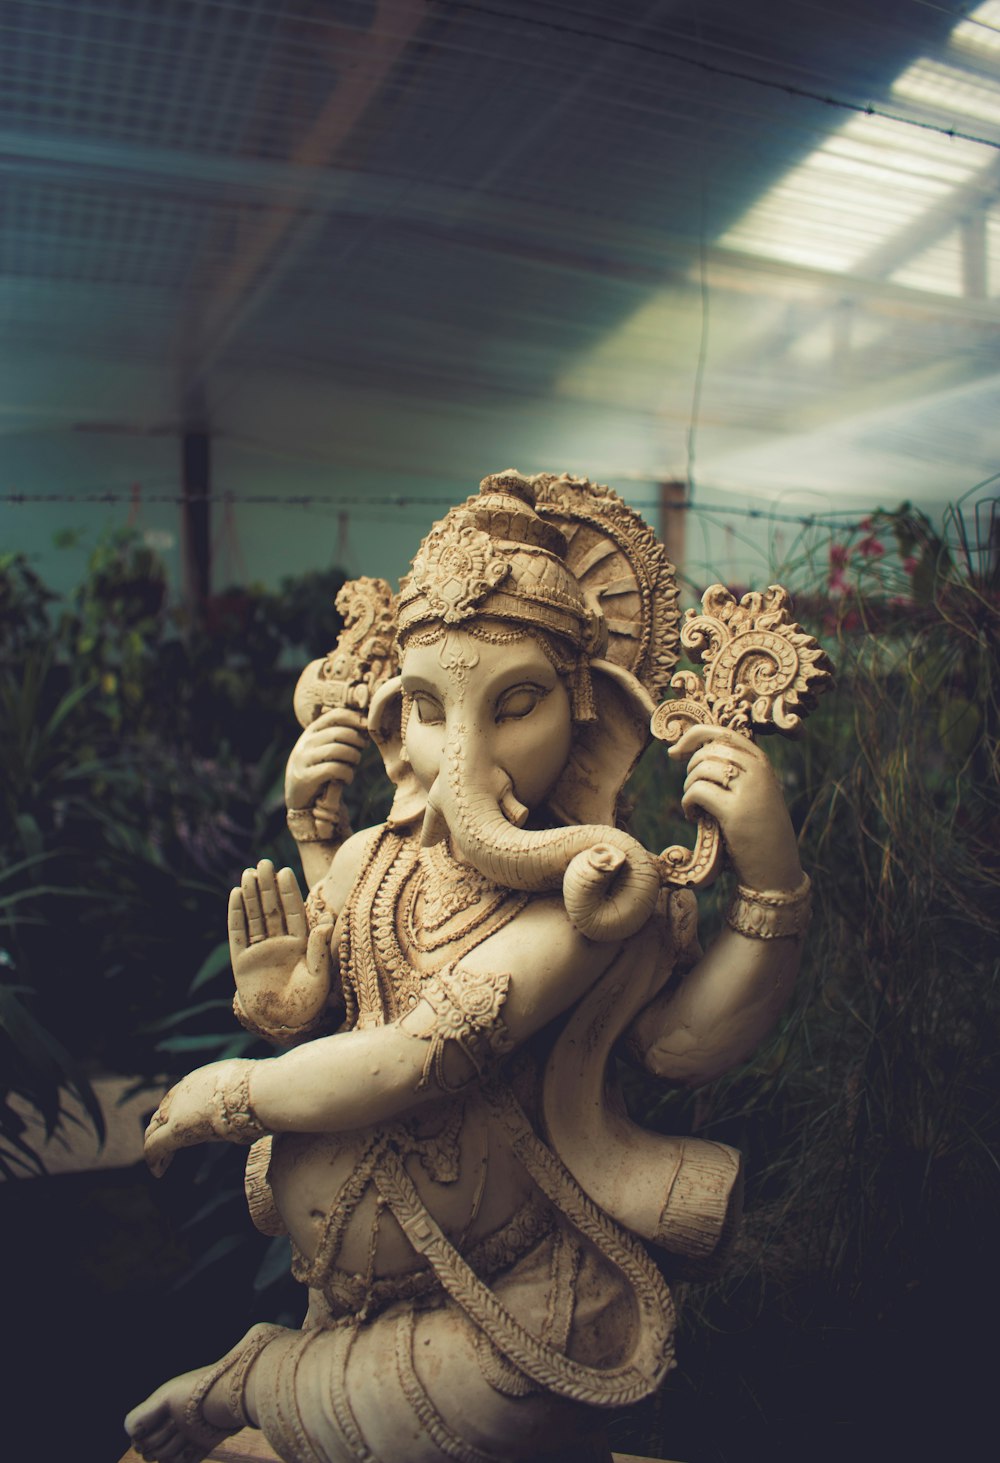 Ganesha-Statue aus braunem Beton, die hinter den Pflanzen steht